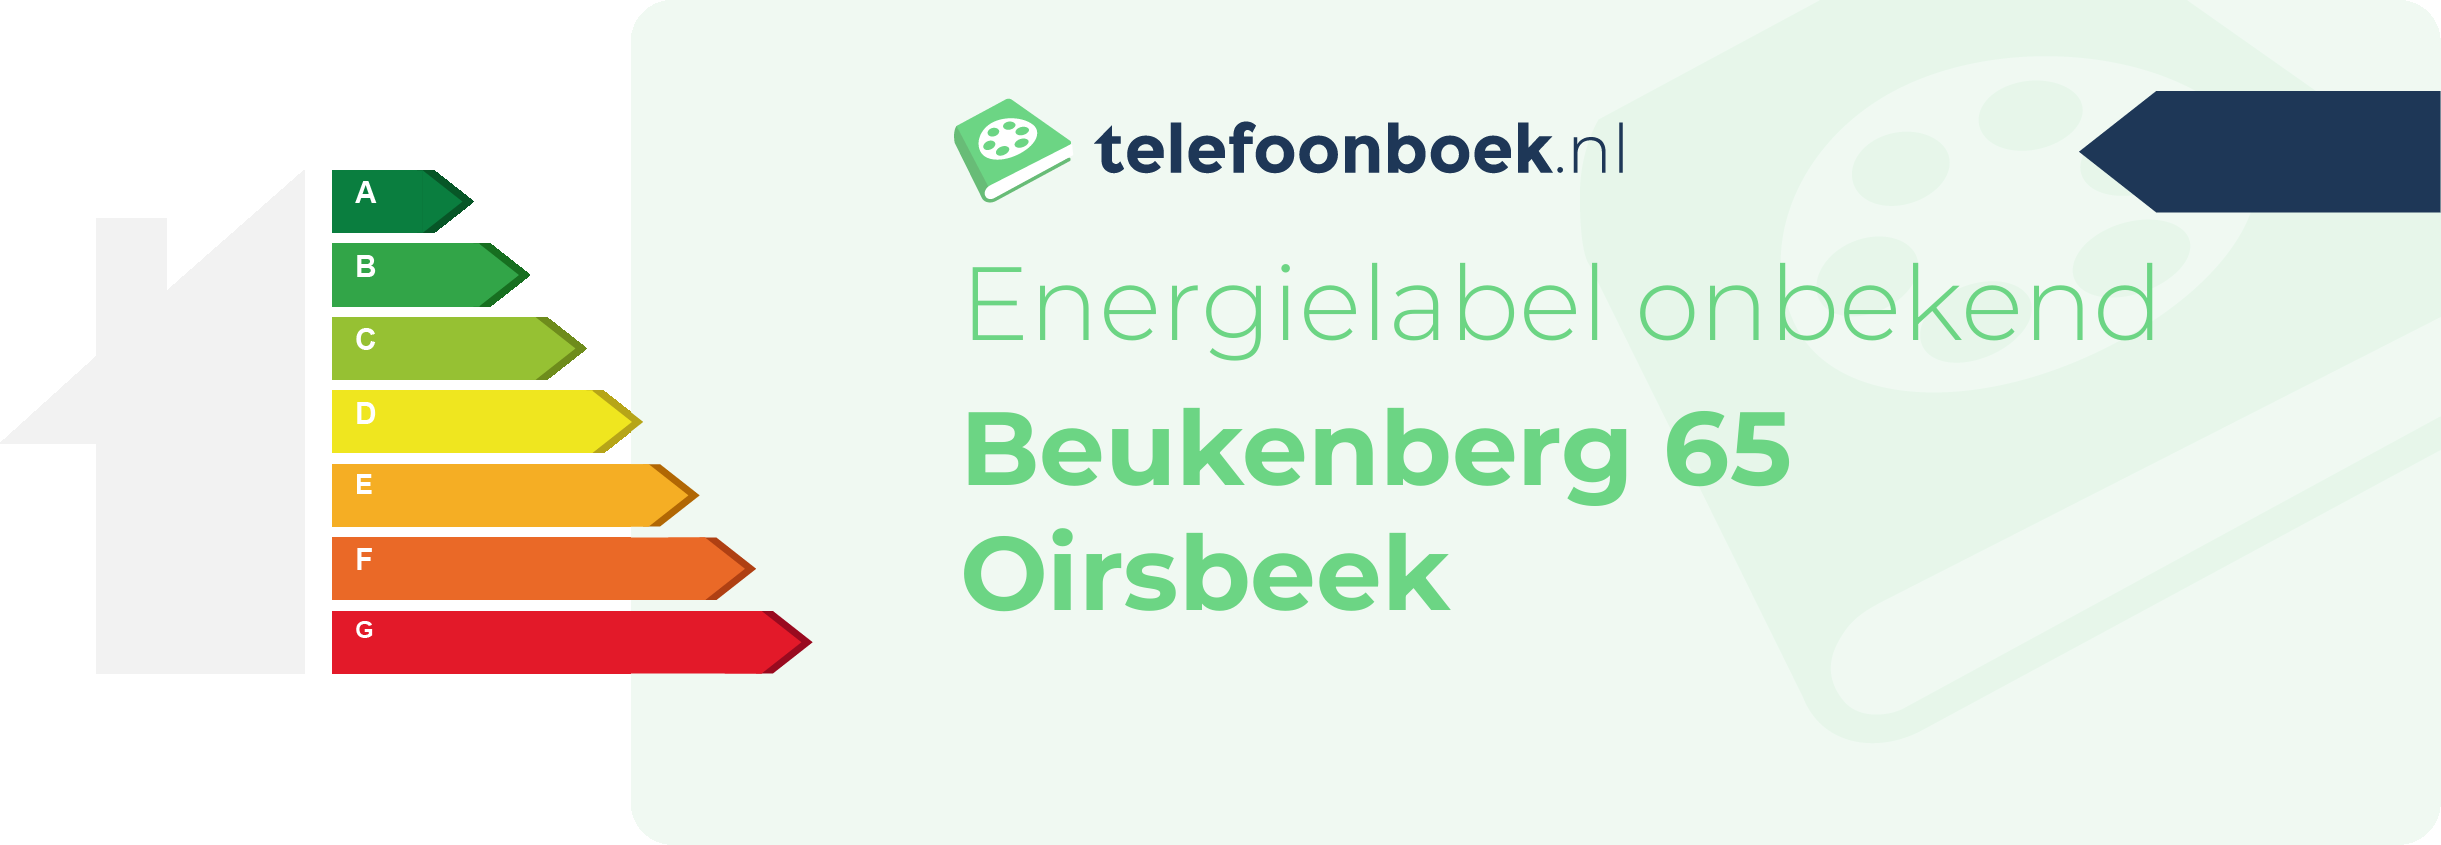 Energielabel Beukenberg 65 Oirsbeek